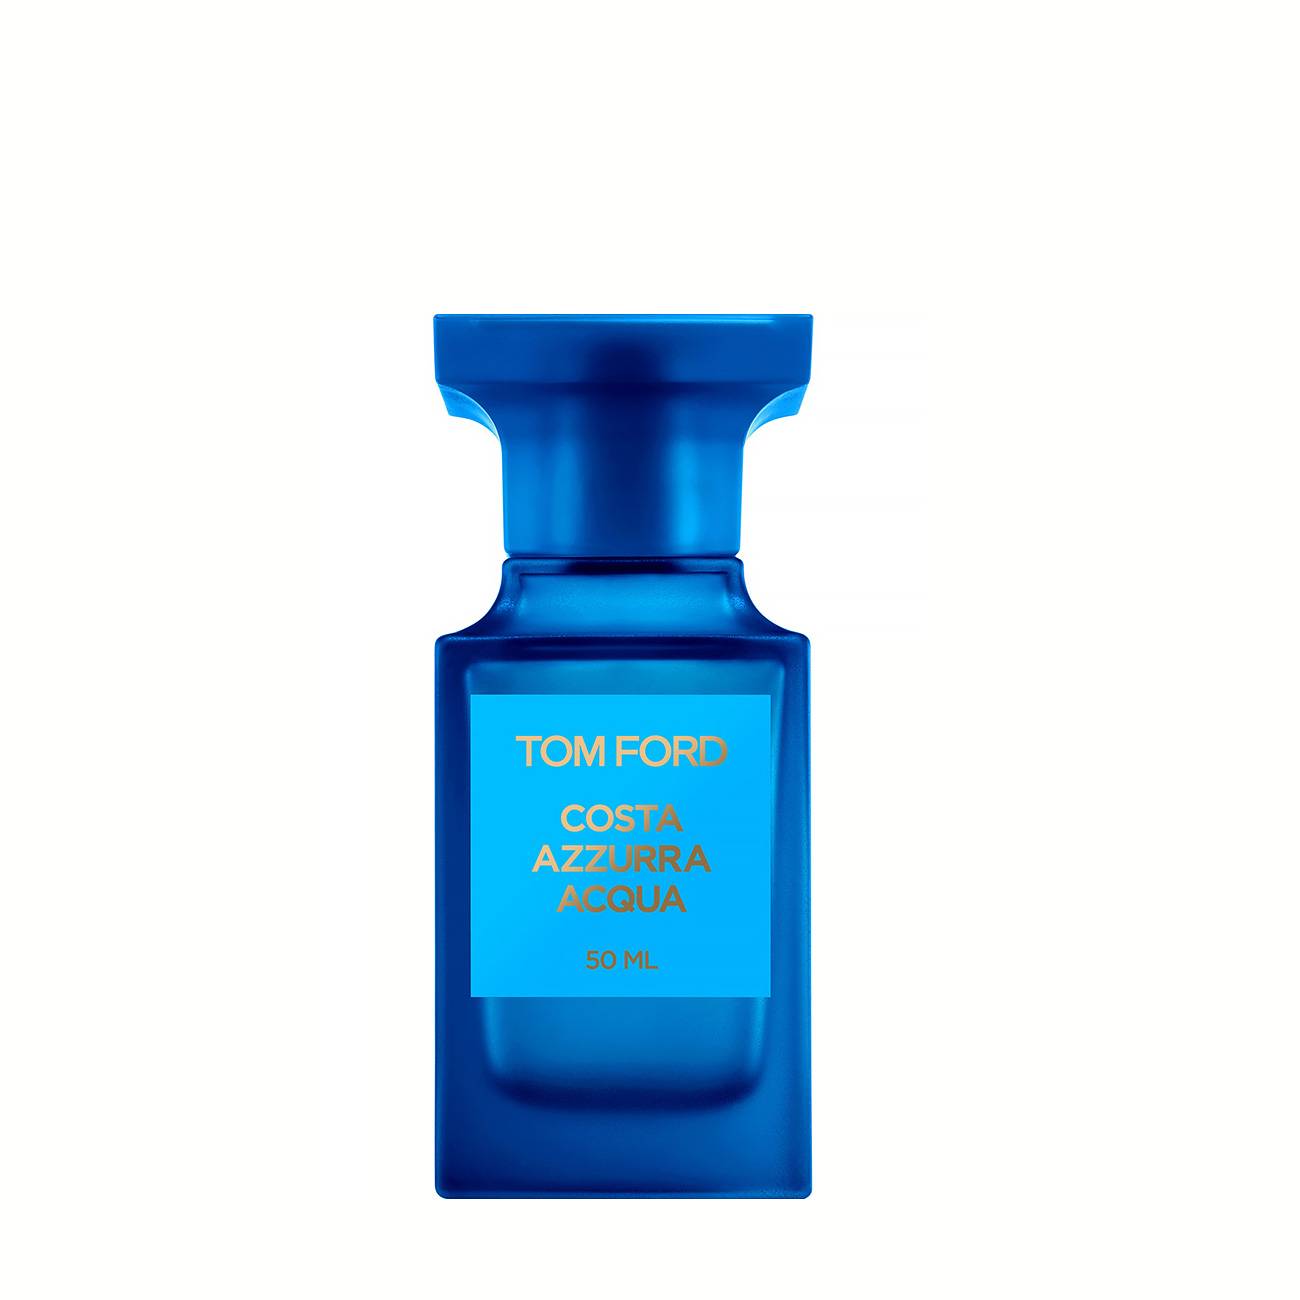 Parfum de niche Tom Ford COSTA AZZURRA ACQUA 50ml cu comanda online